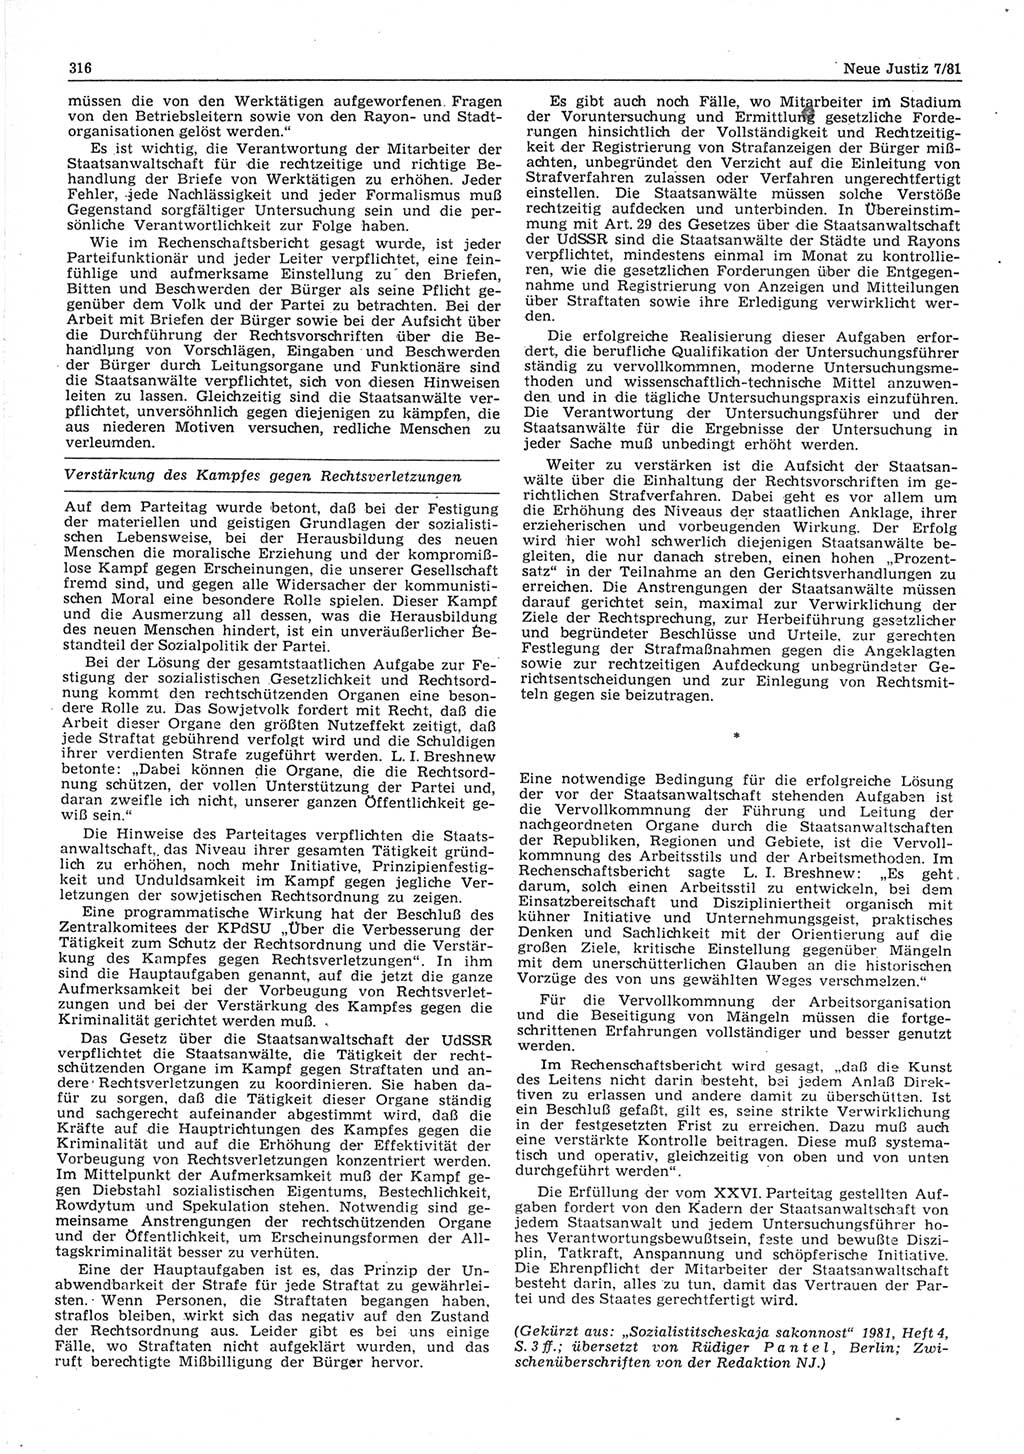 Neue Justiz (NJ), Zeitschrift für sozialistisches Recht und Gesetzlichkeit [Deutsche Demokratische Republik (DDR)], 35. Jahrgang 1981, Seite 316 (NJ DDR 1981, S. 316)